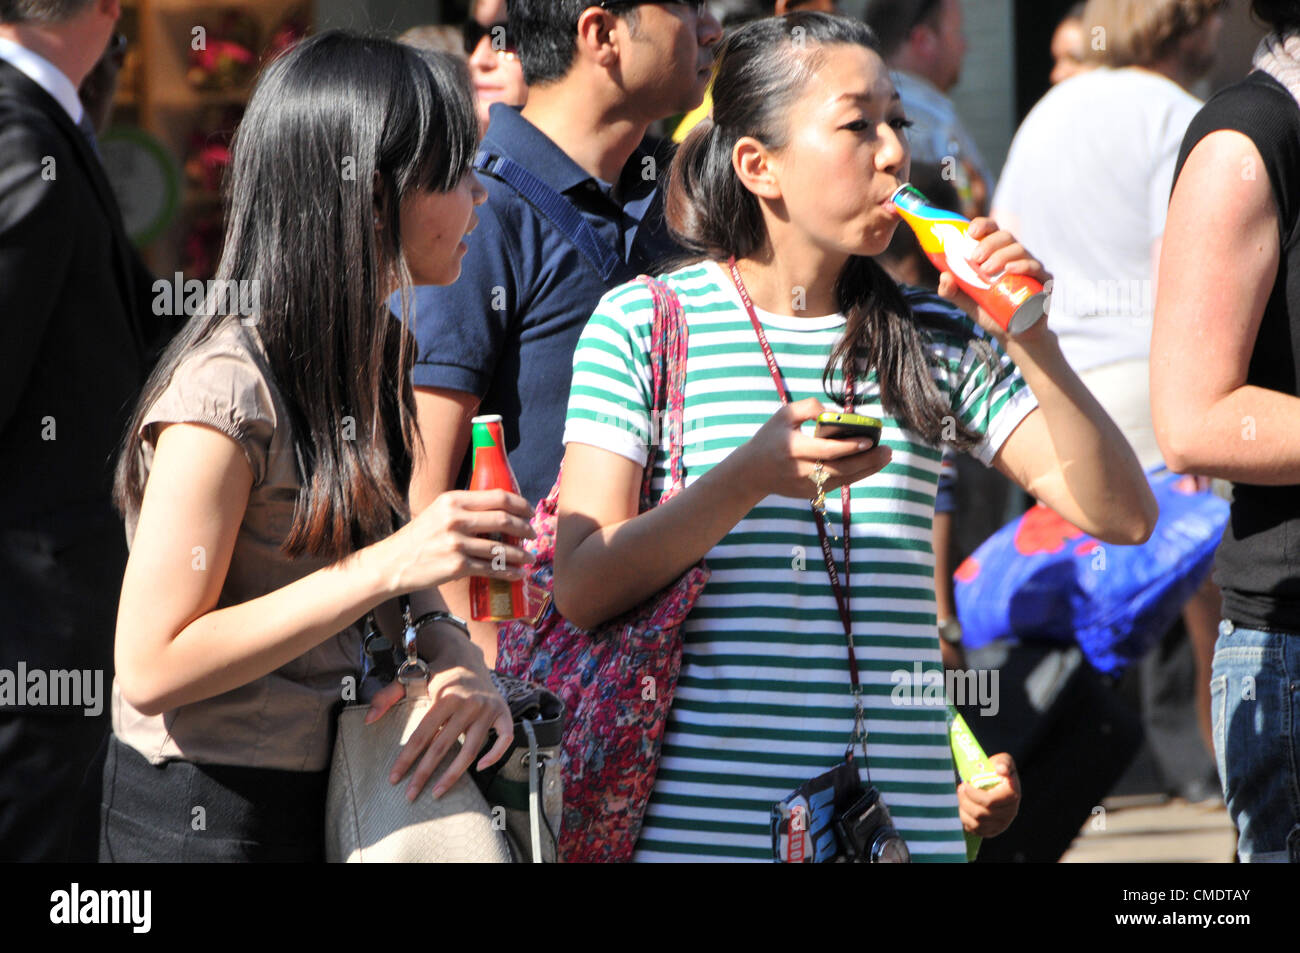 Oxford Street, London, UK. 26. Juli 2012. Mitglieder der Menge trinken kostenlose Flaschen Coca Cola Spiele Sponsor, als des Olympischen Fackellaufs verläuft entlang der Oxford Street im Zentrum von London und nähert sich das Ende seiner 8.000 Meile Reise in ganz Großbritannien. Stockfoto